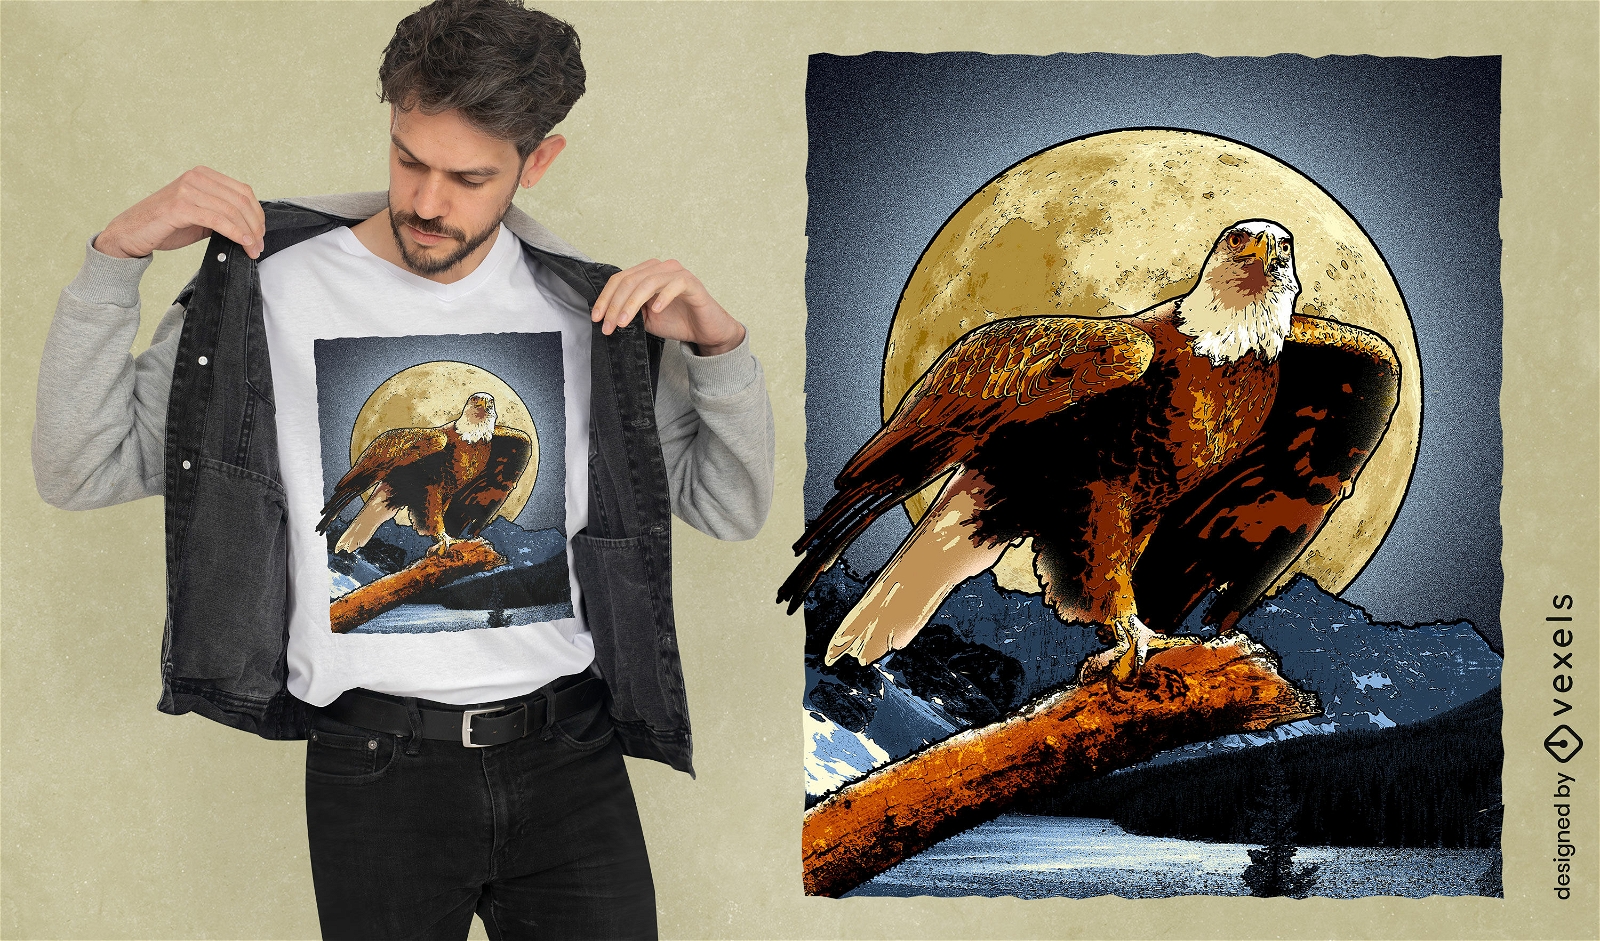 Eagle at night t-shirt design